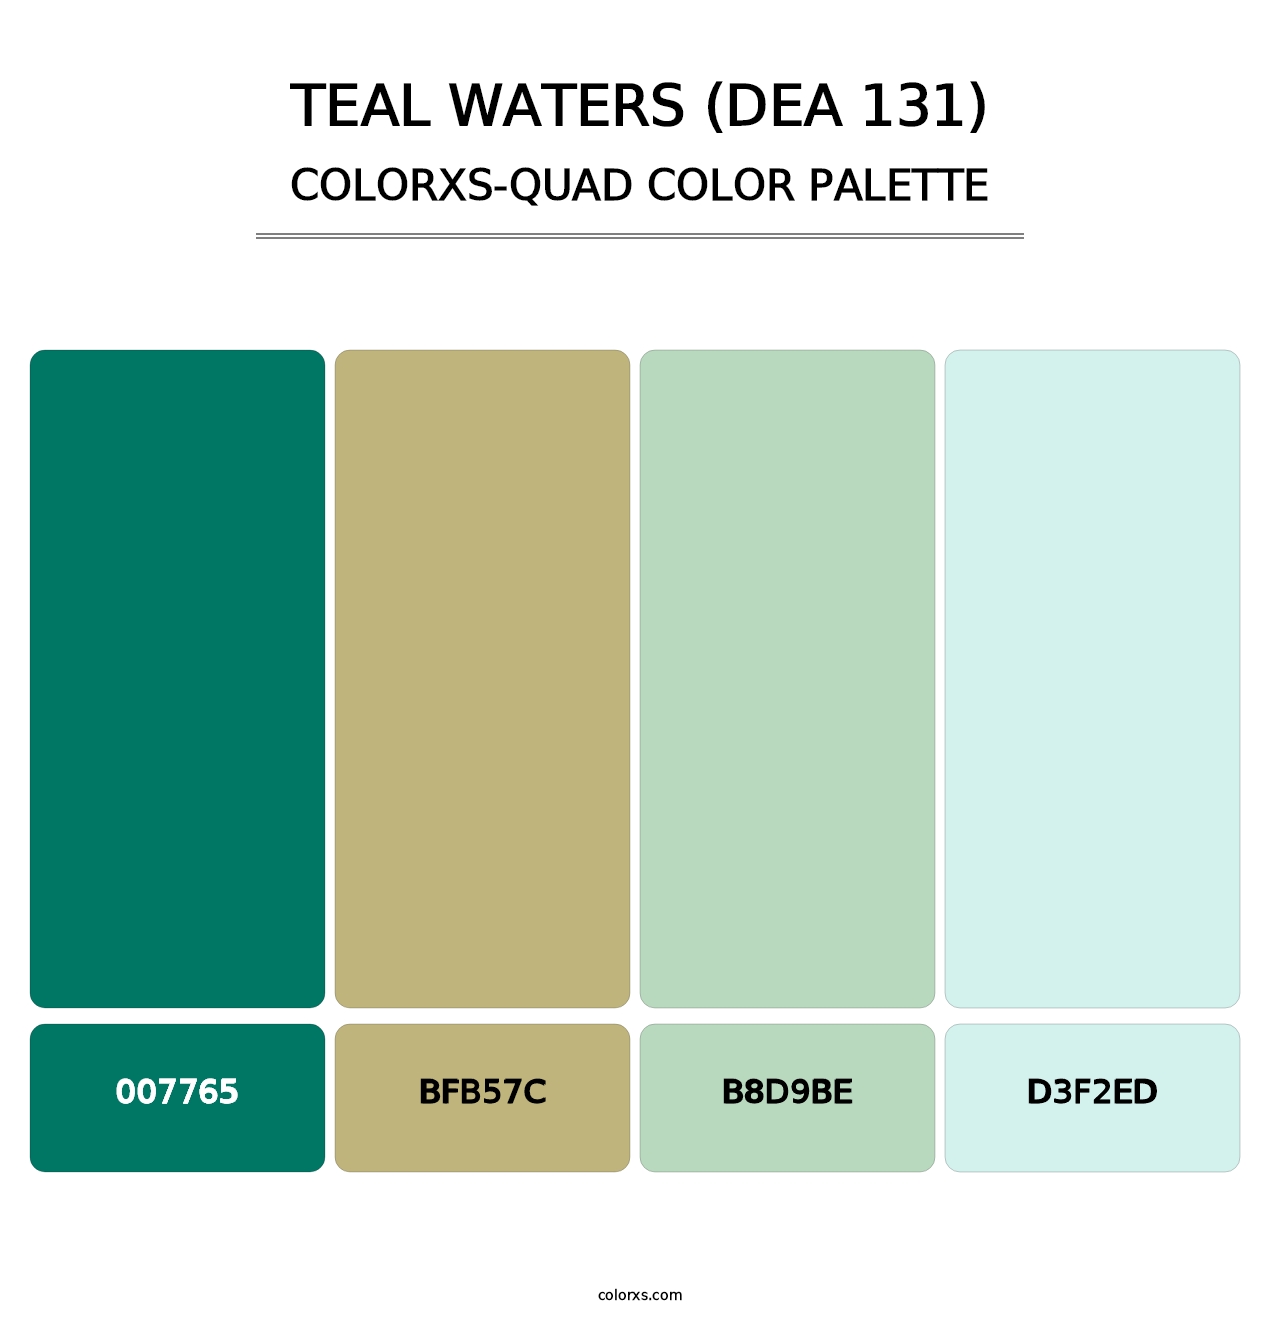 Teal Waters (DEA 131) - Colorxs Quad Palette